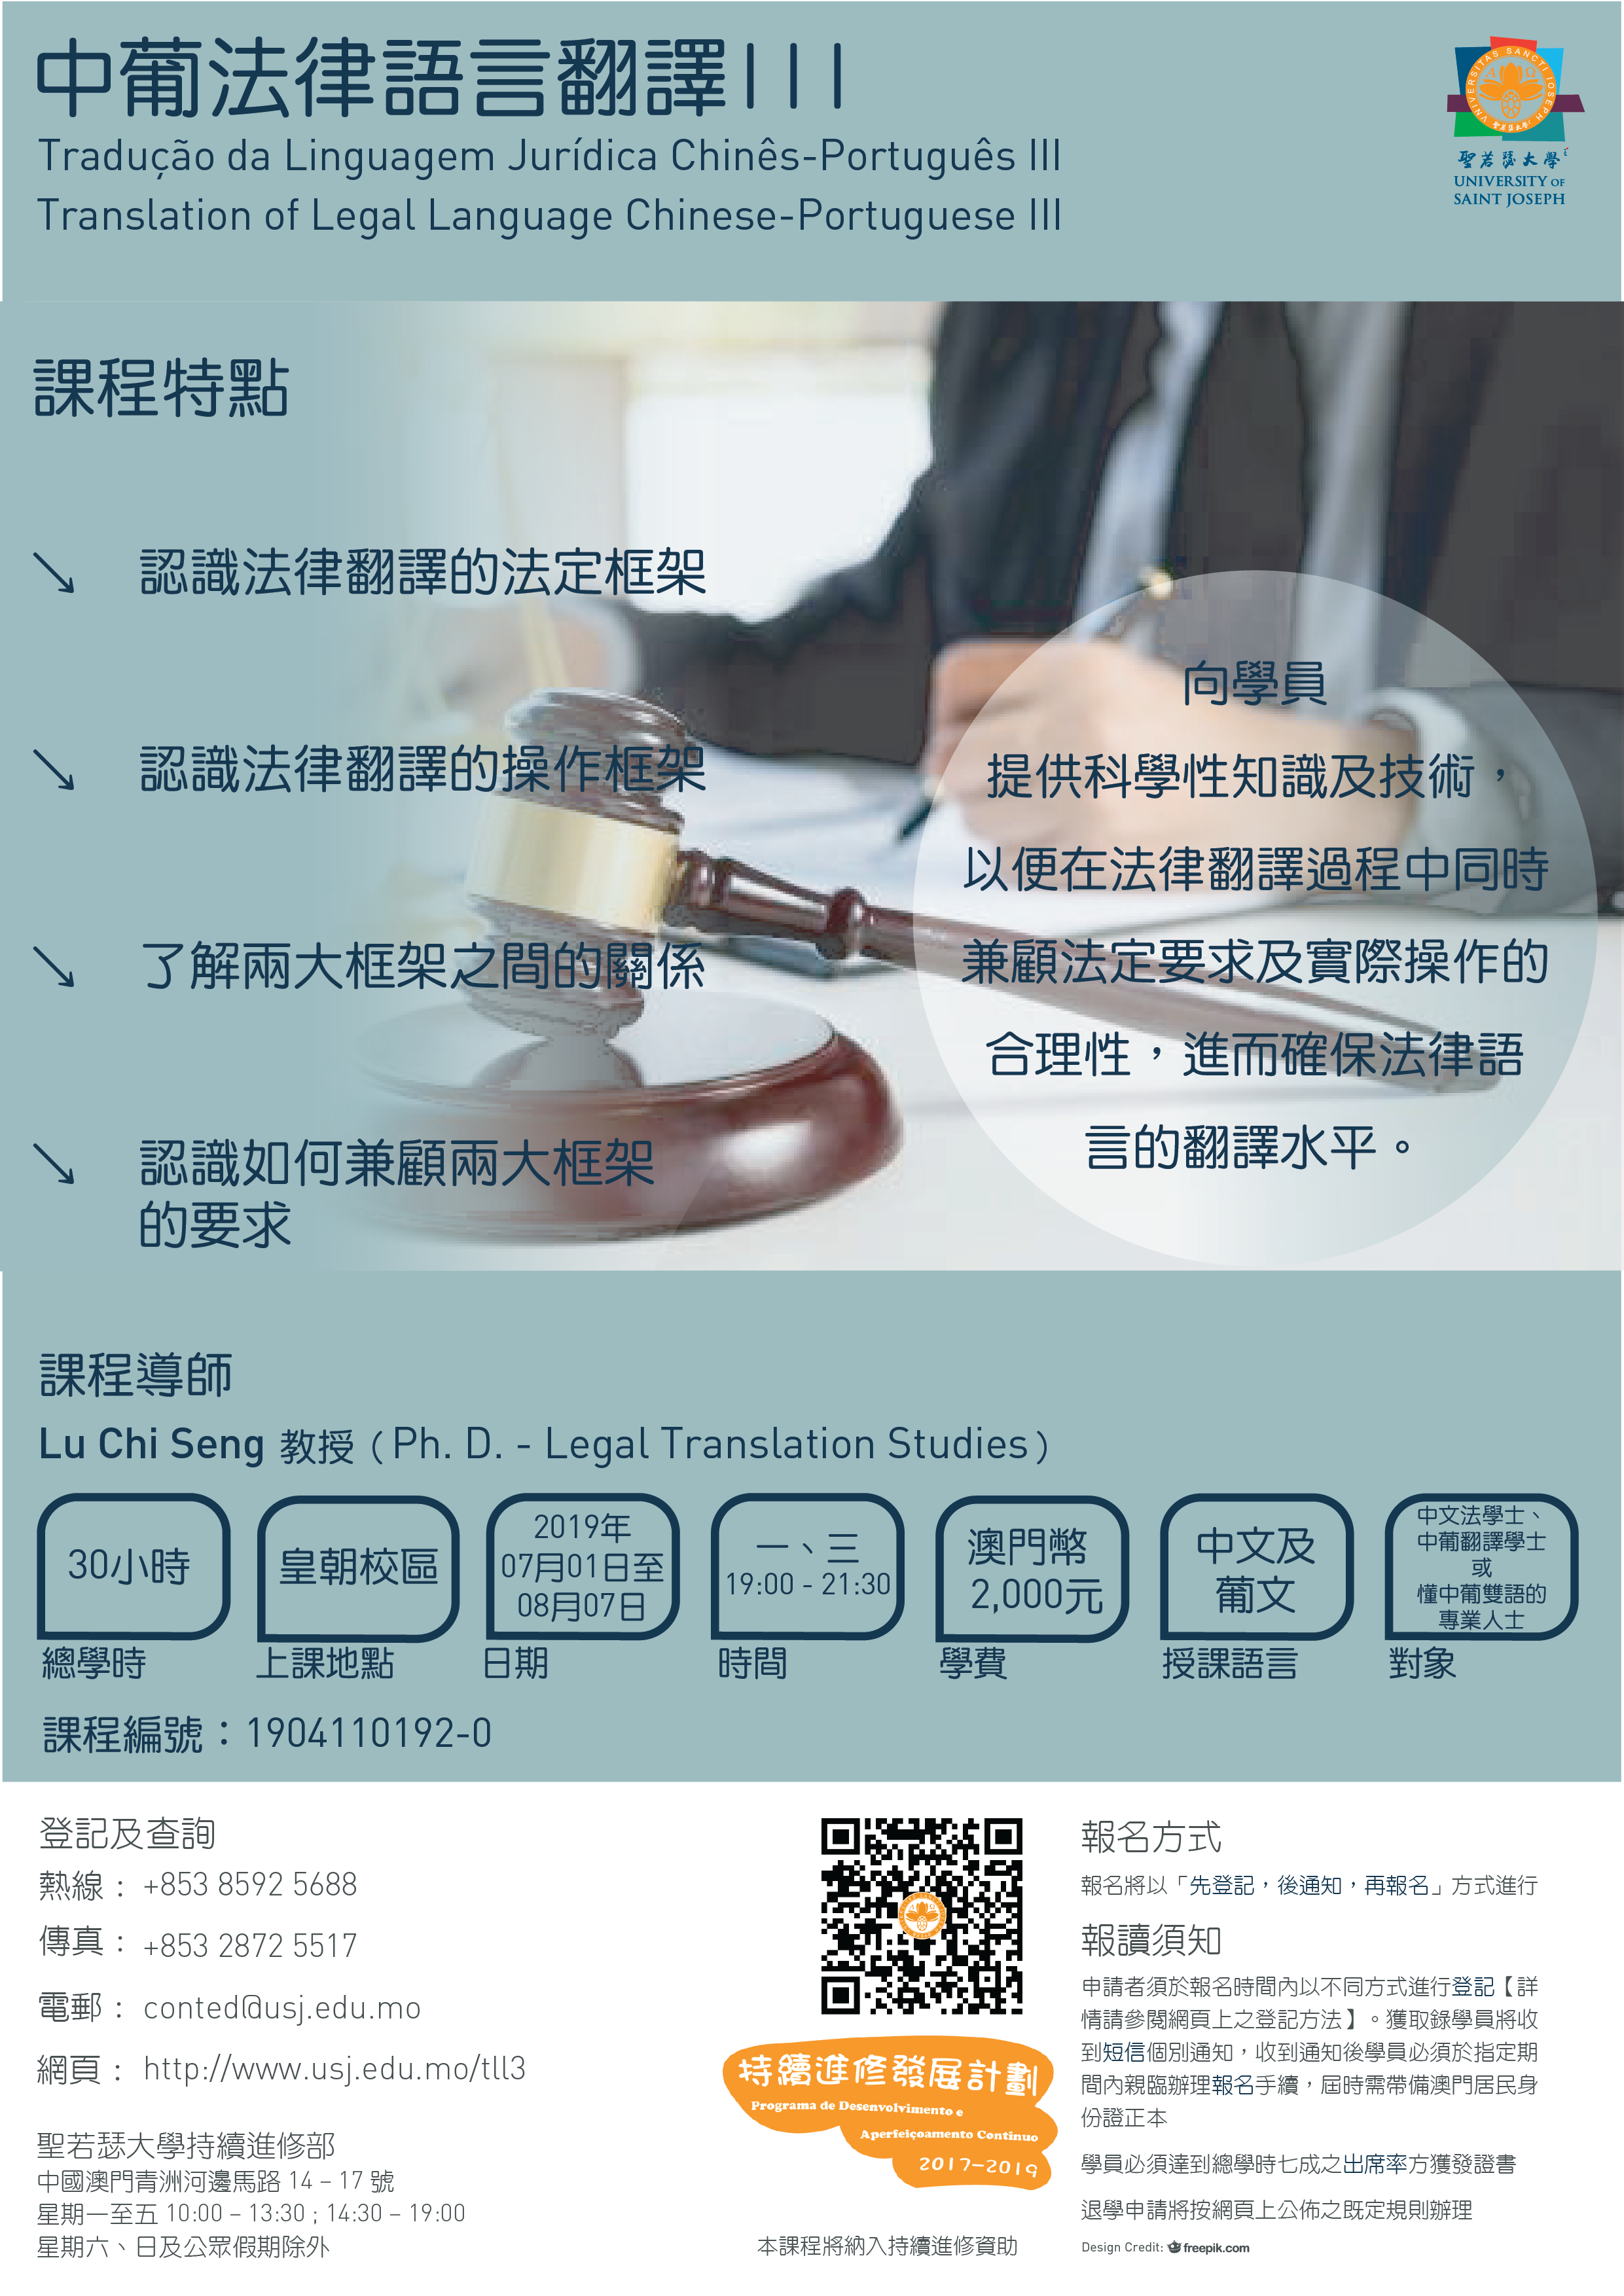 Translation of legal language chinese-protuguese III_01_updated